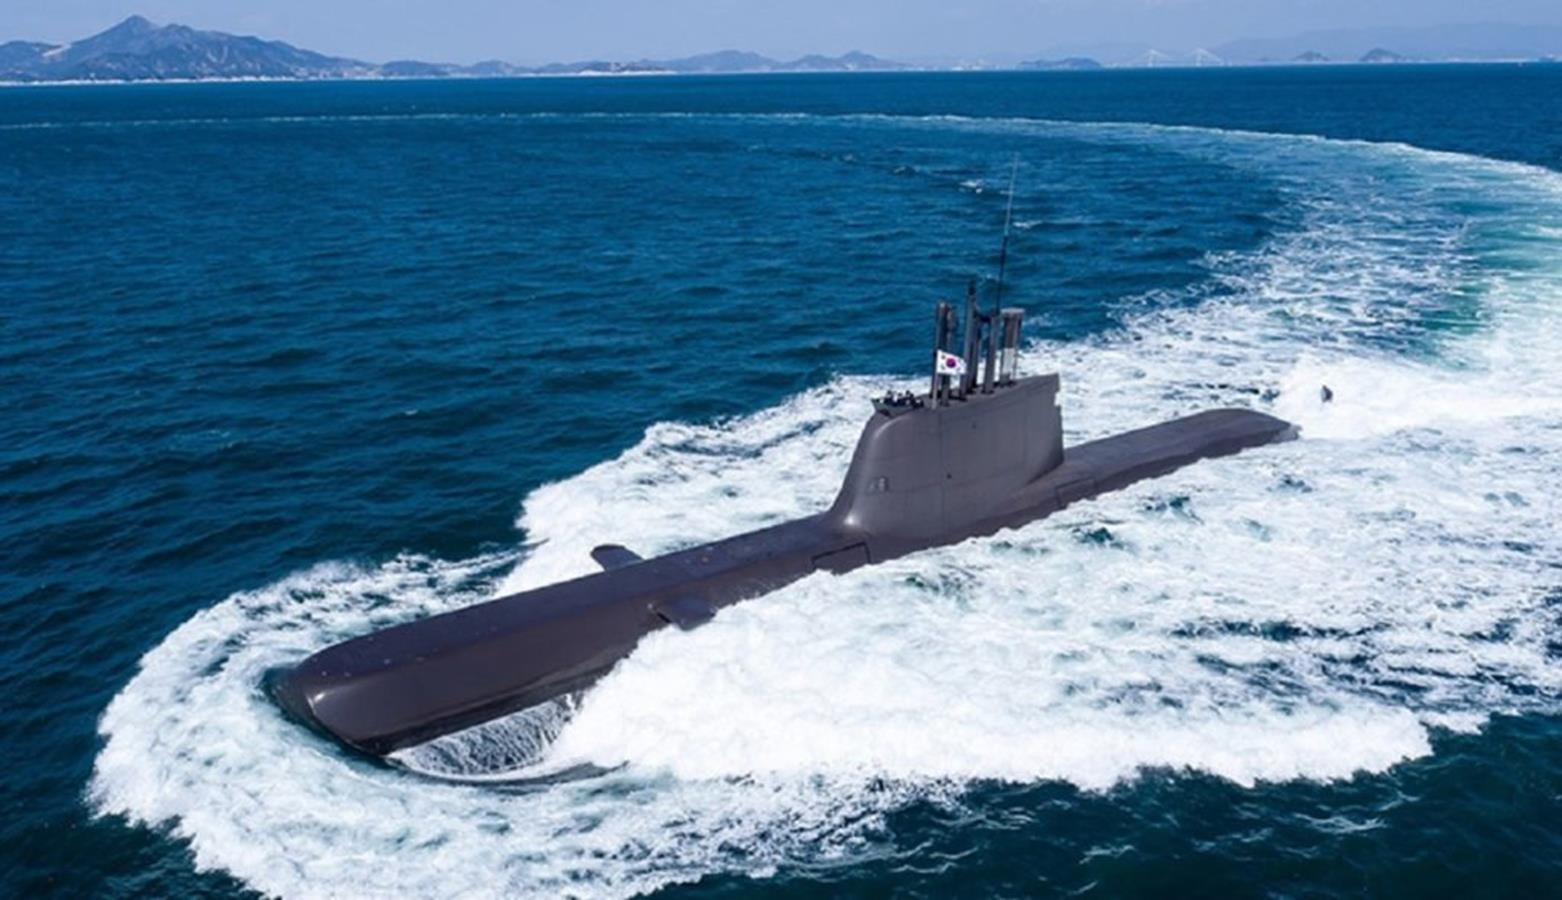 rewolucja technologii napędu AIP w okrętach podwodnych,technologii napędu AIP w okrętach podwodnych,